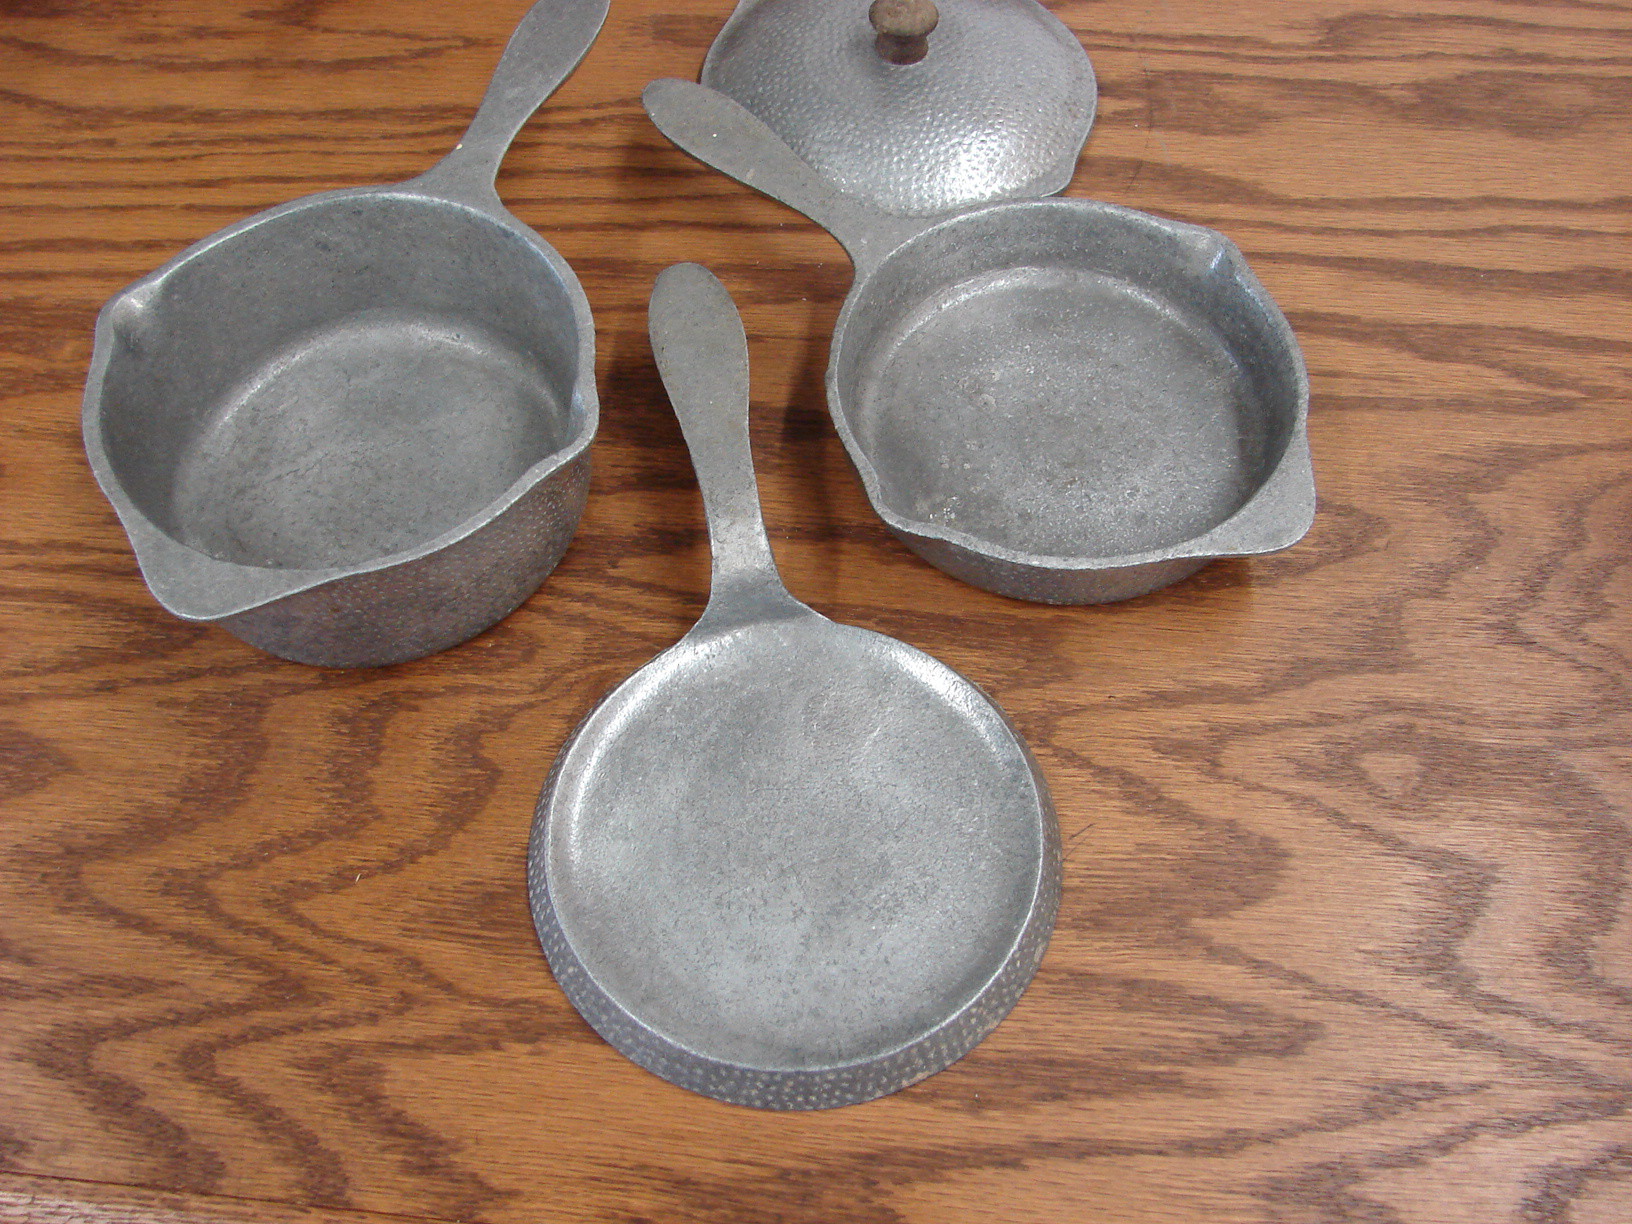 Vintage National Frying Pan, Saucepan, Aluminum Pot 